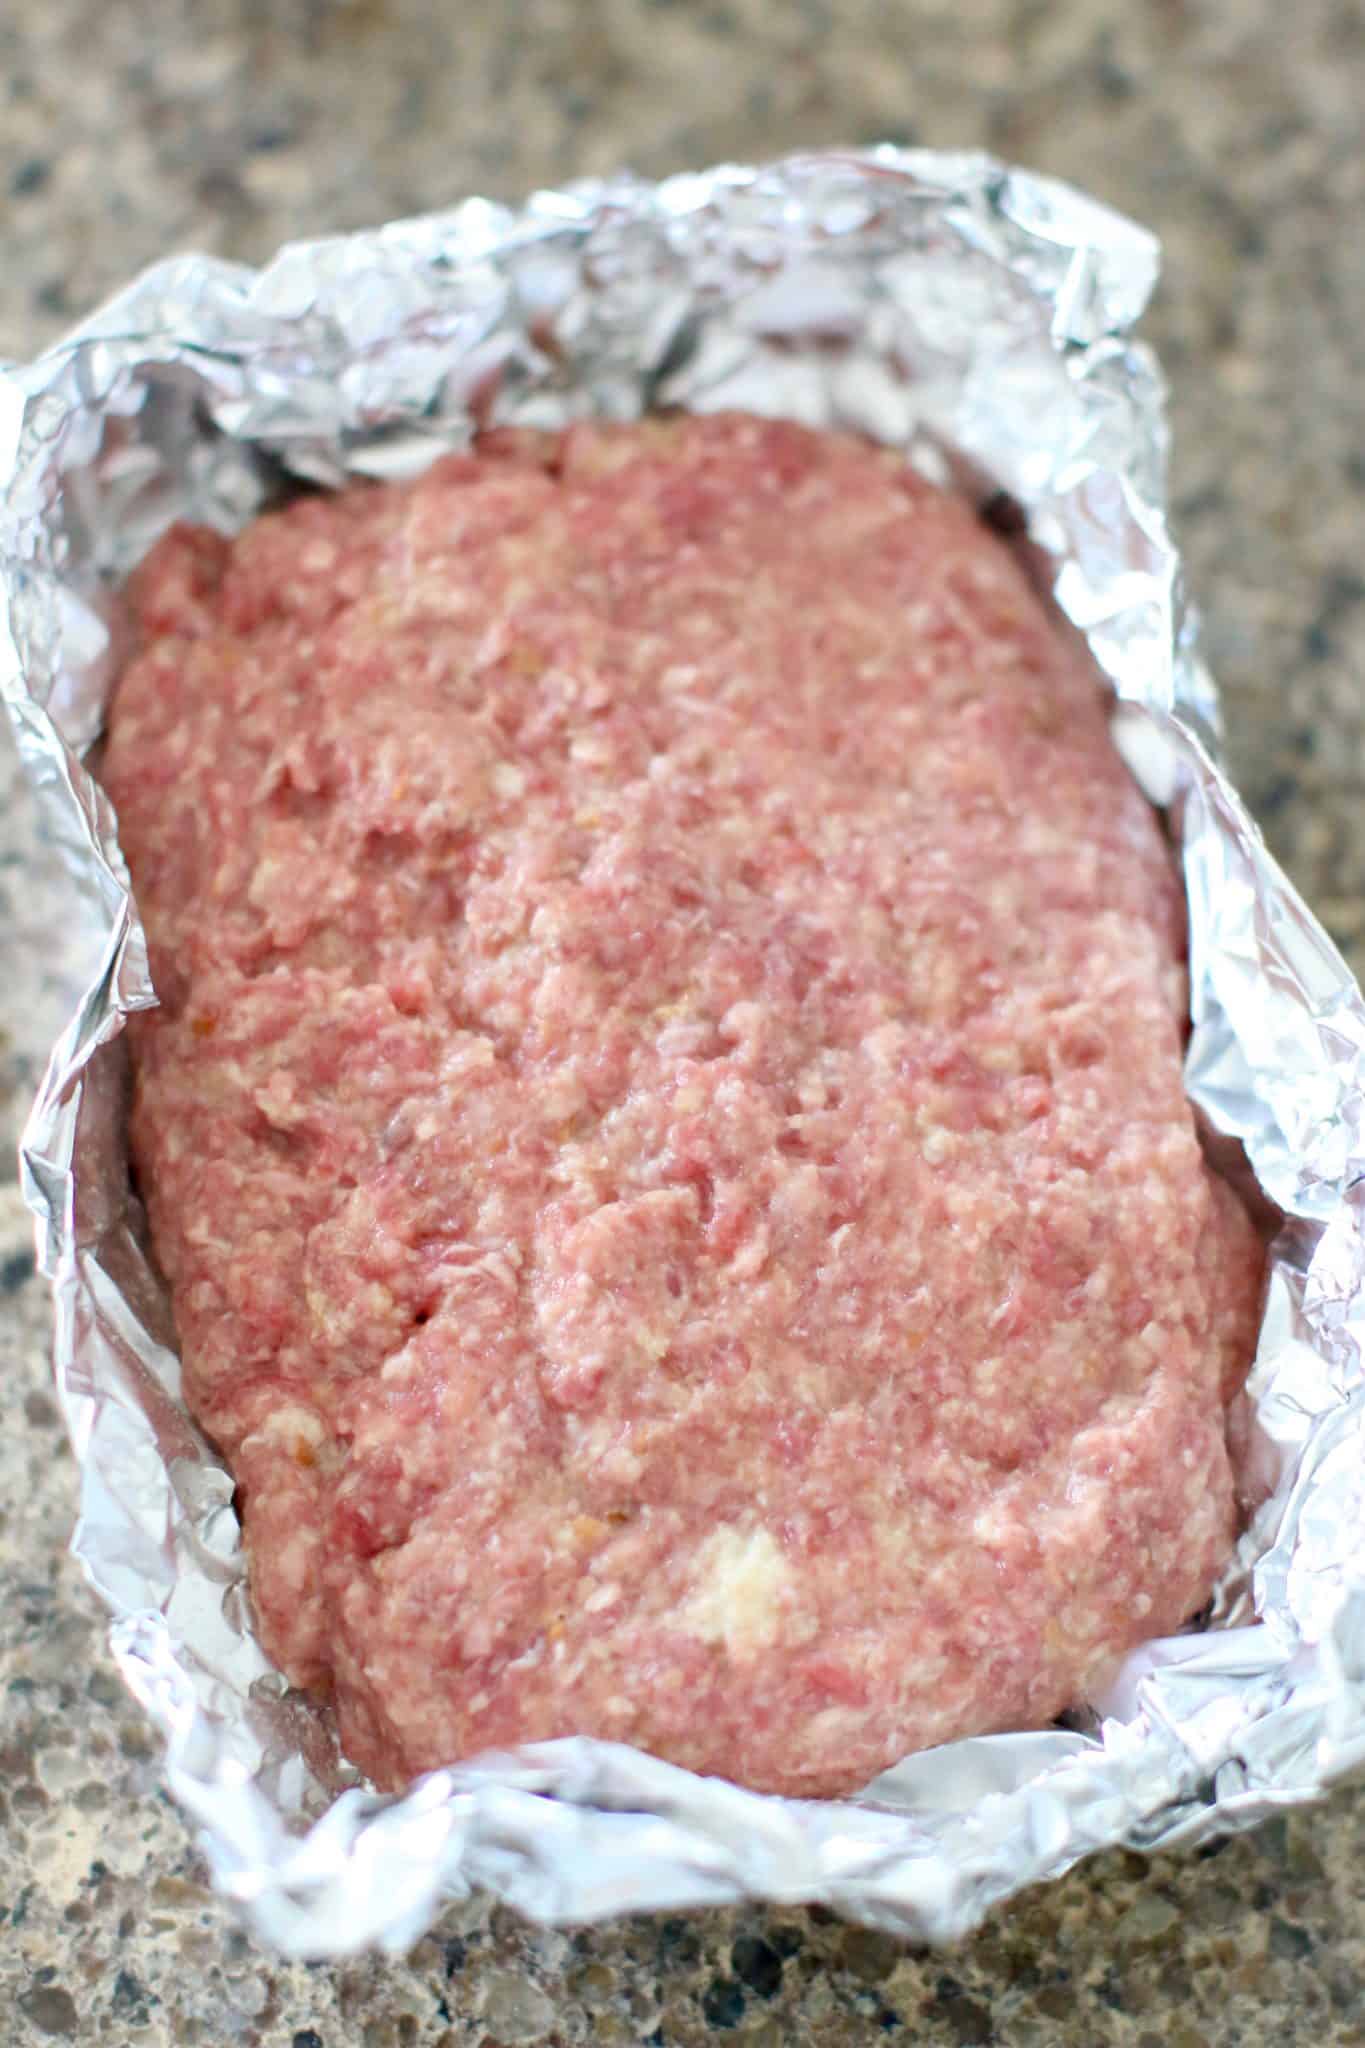 meatloaf mixture on aluminum foil.